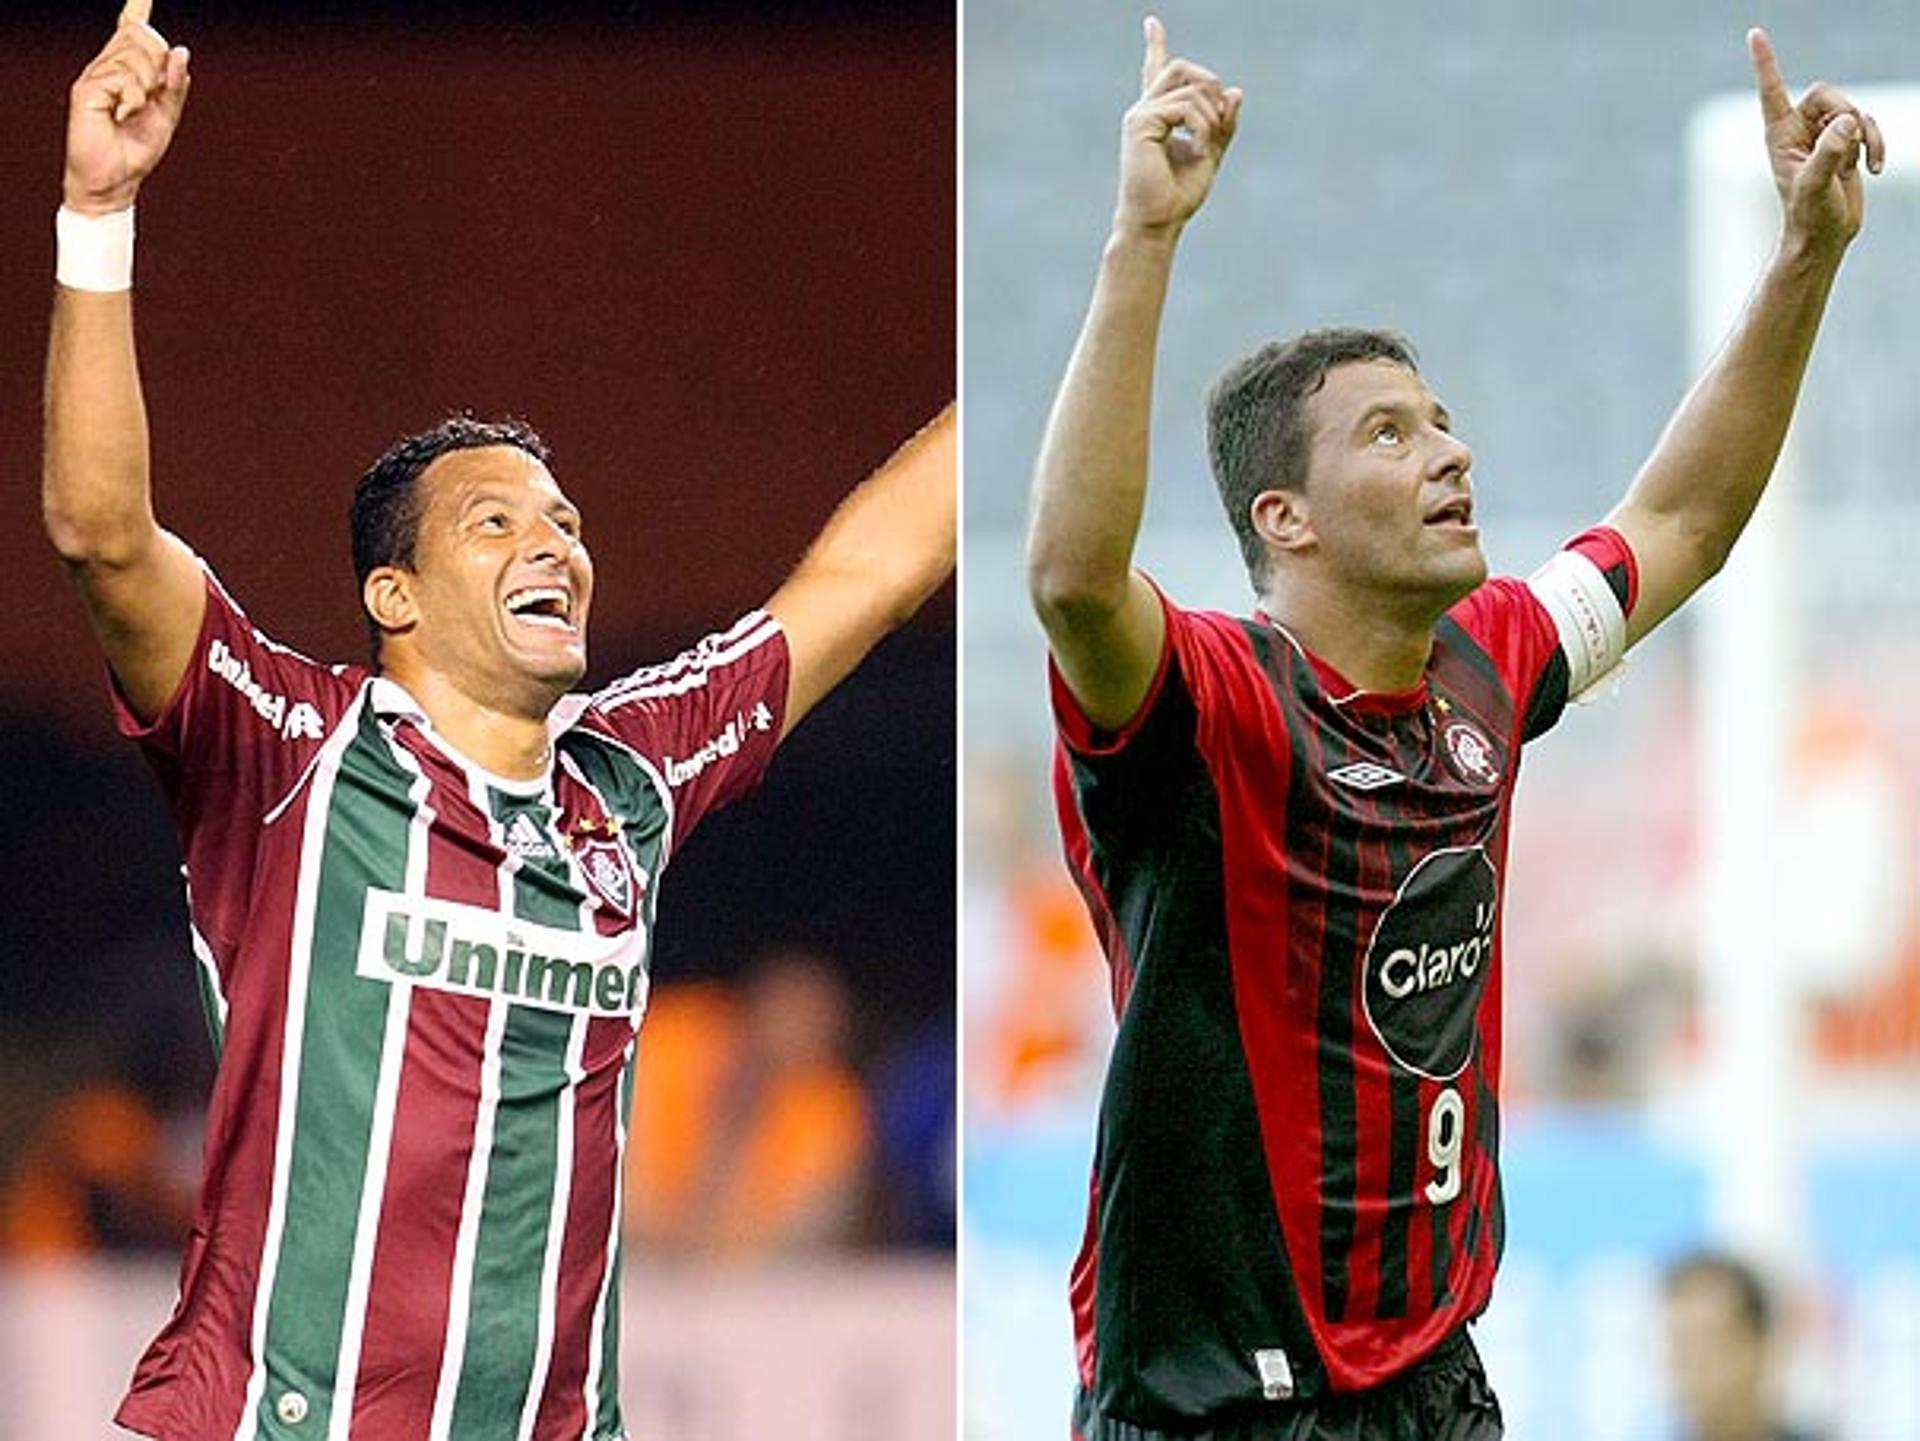 Washington marcou época com as camisas de Fluminense e Atlético-PR